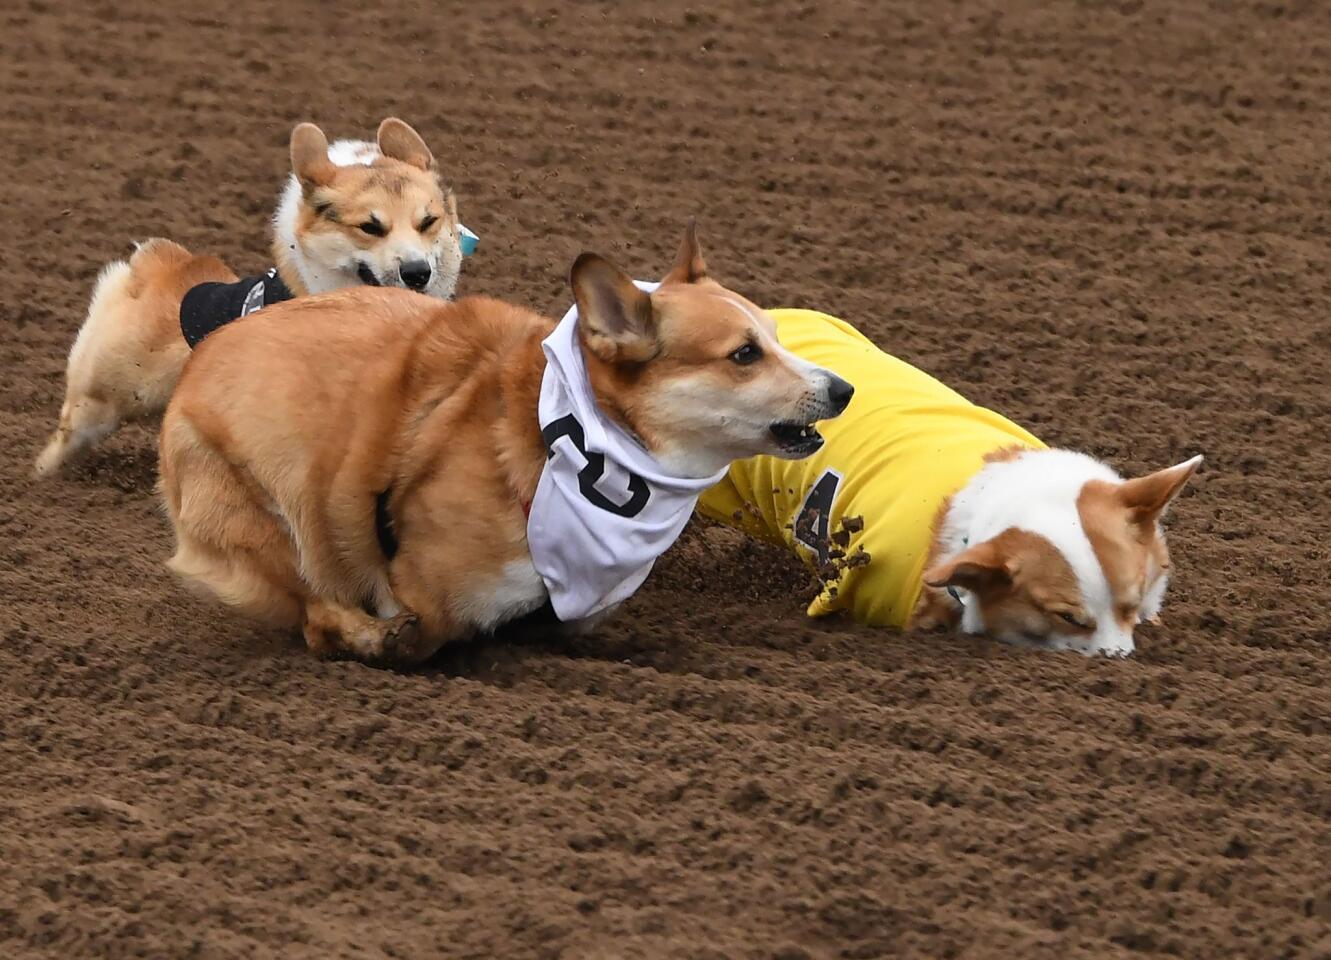 Corgi racing: Which fluffy pup will be champ at Santa Anita?